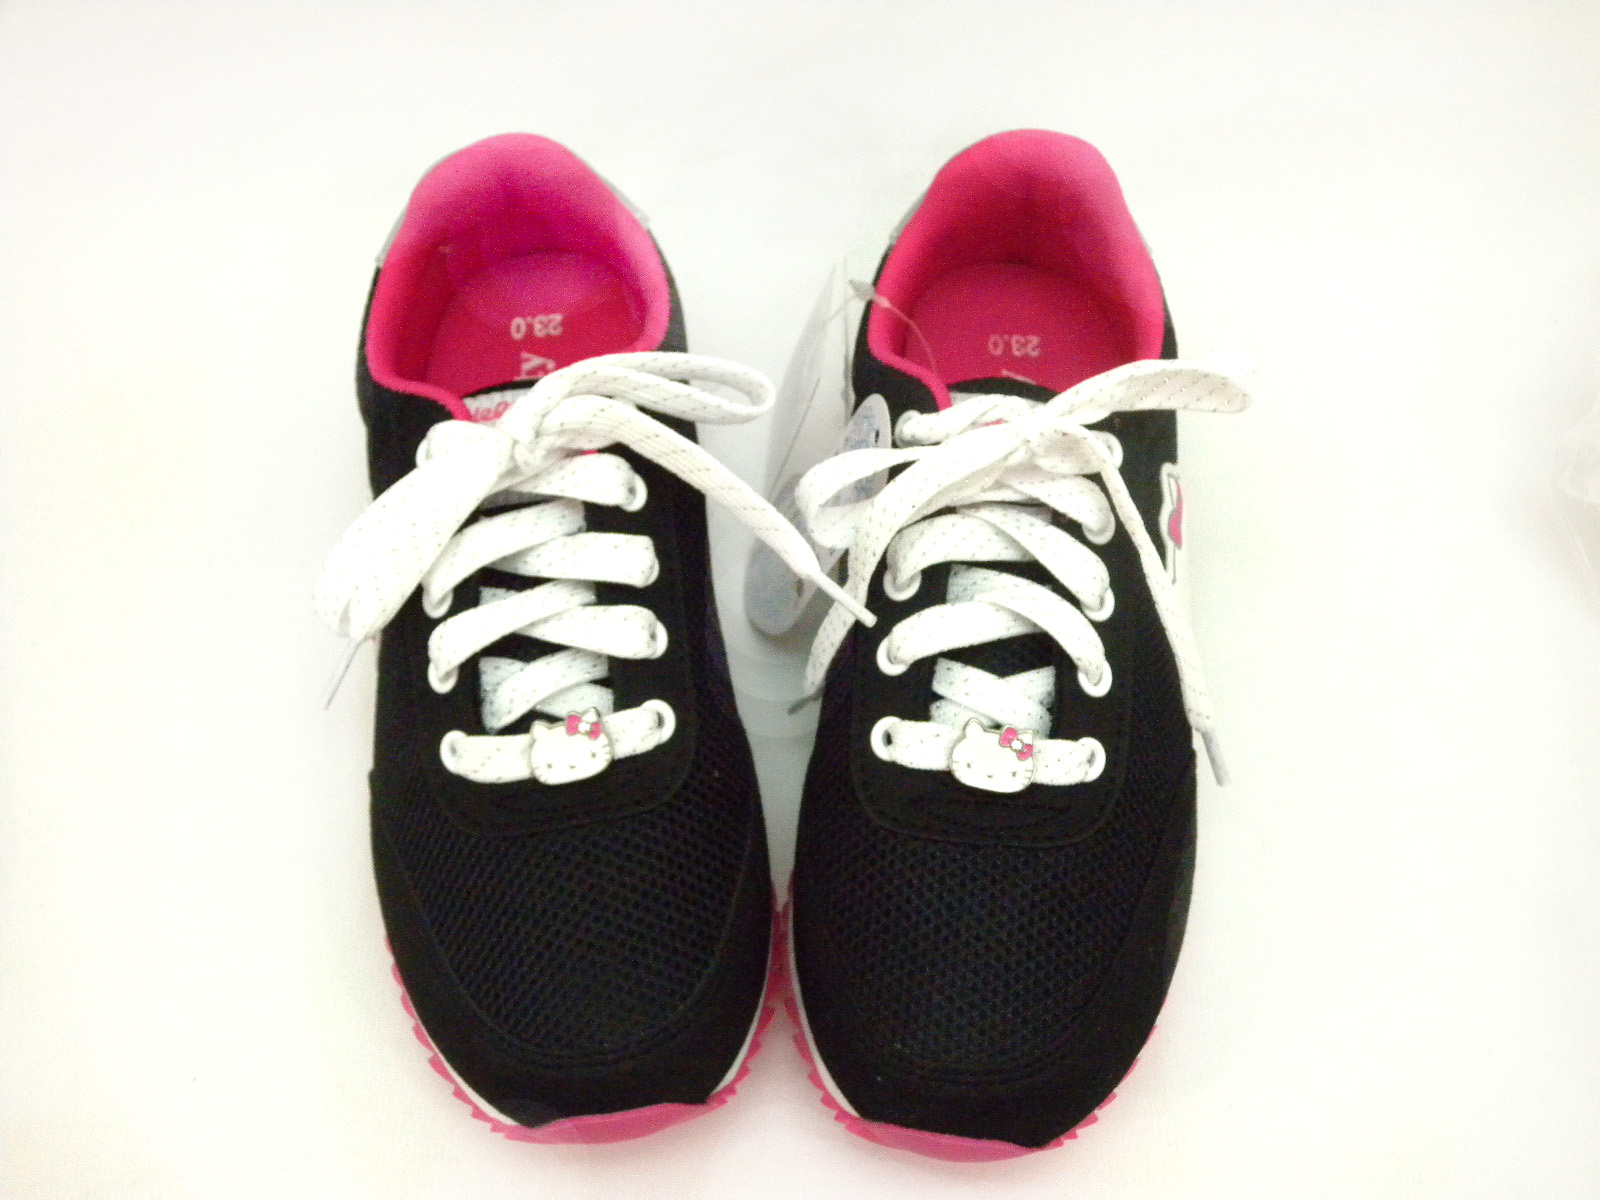 凱蒂貓Hello Kitty_女鞋_Hello Kitty- 透氣休閒鞋914124-黑23